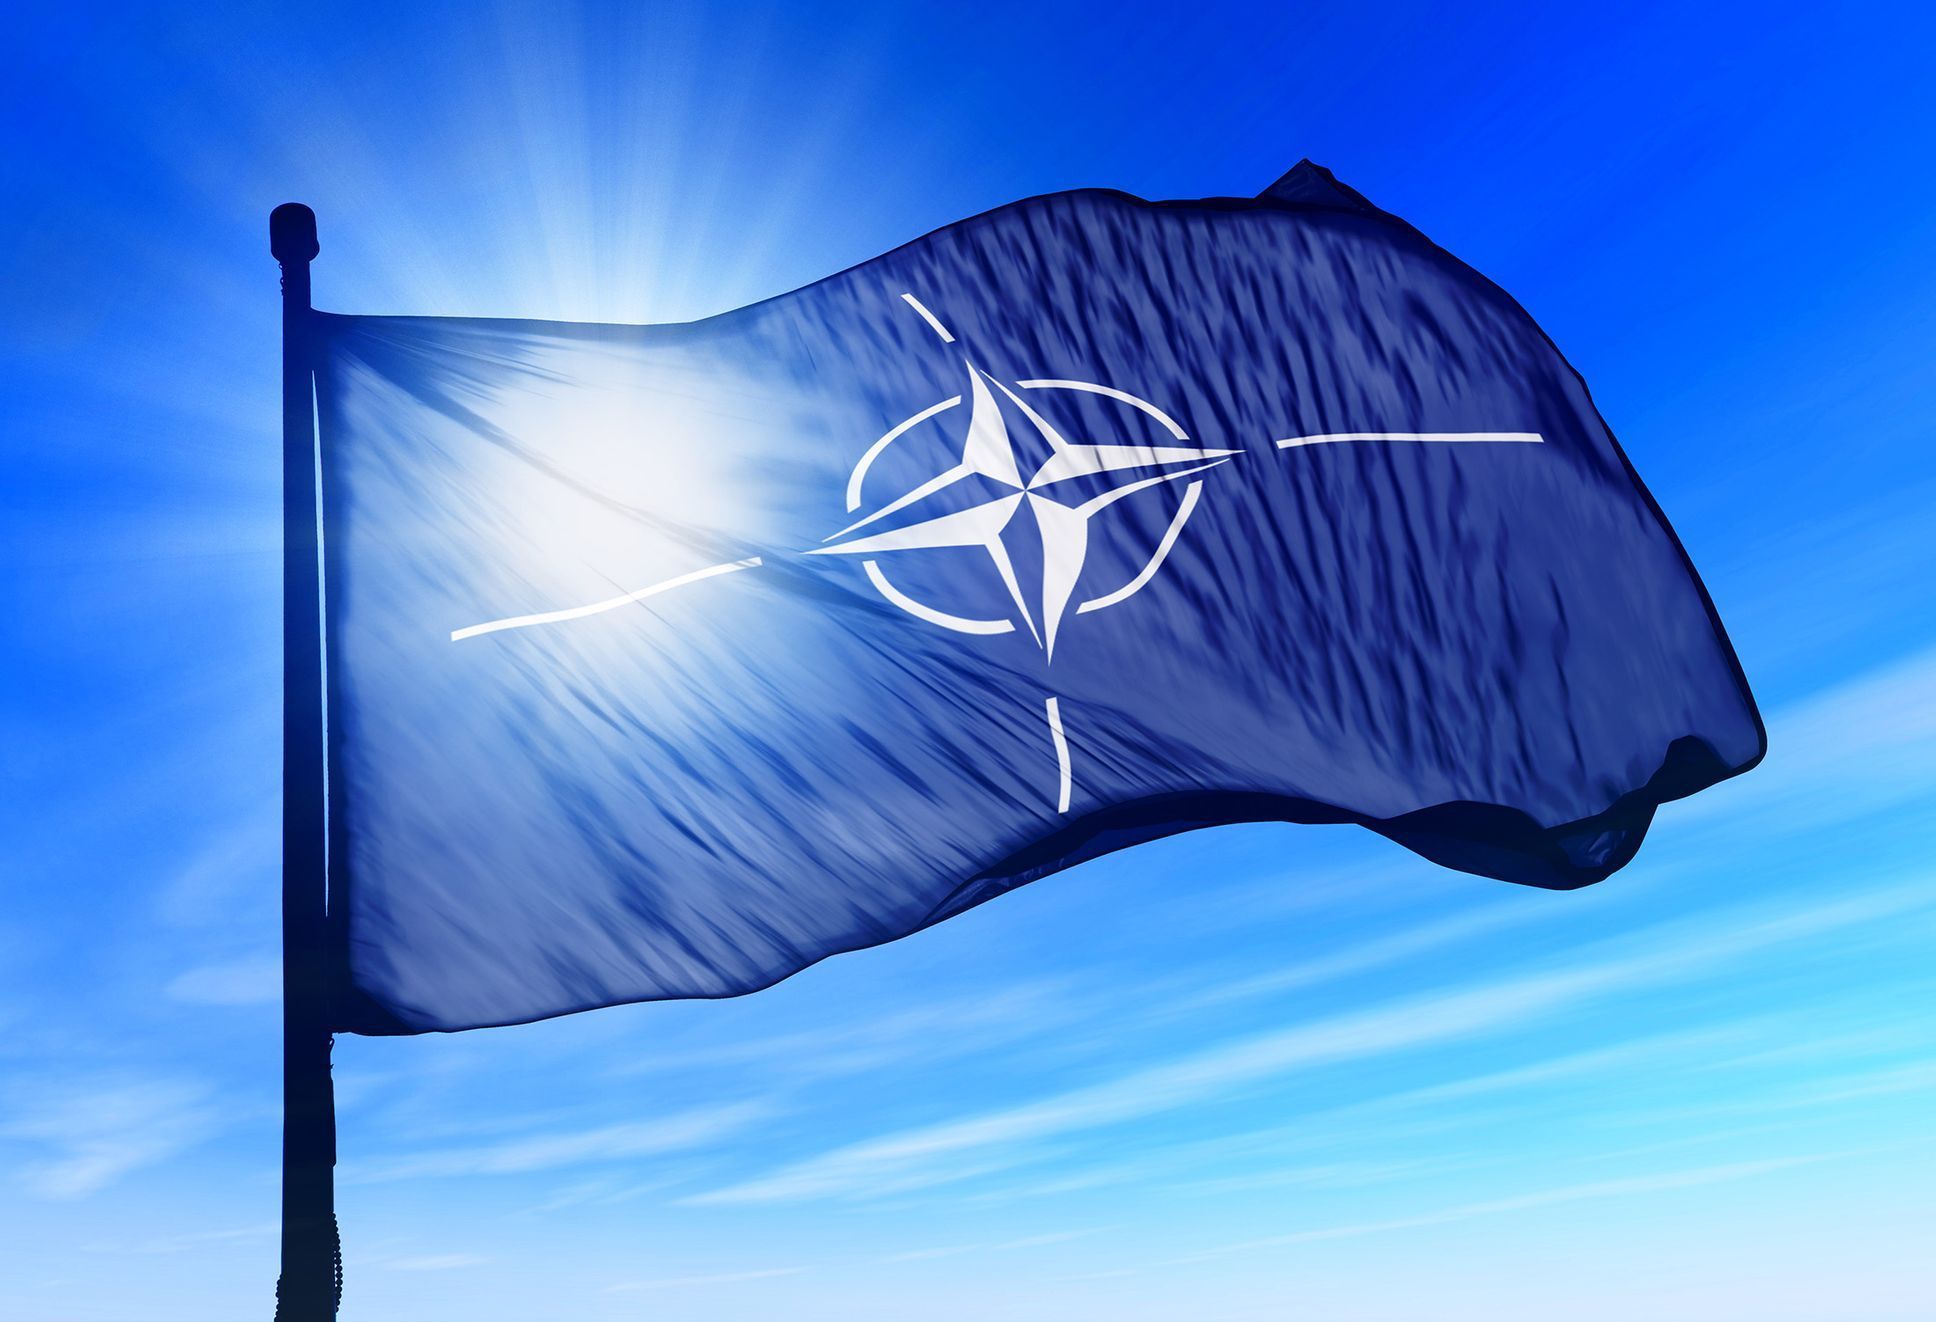 NATO / Vlajka / Ilustrační snímek / Shutterstock